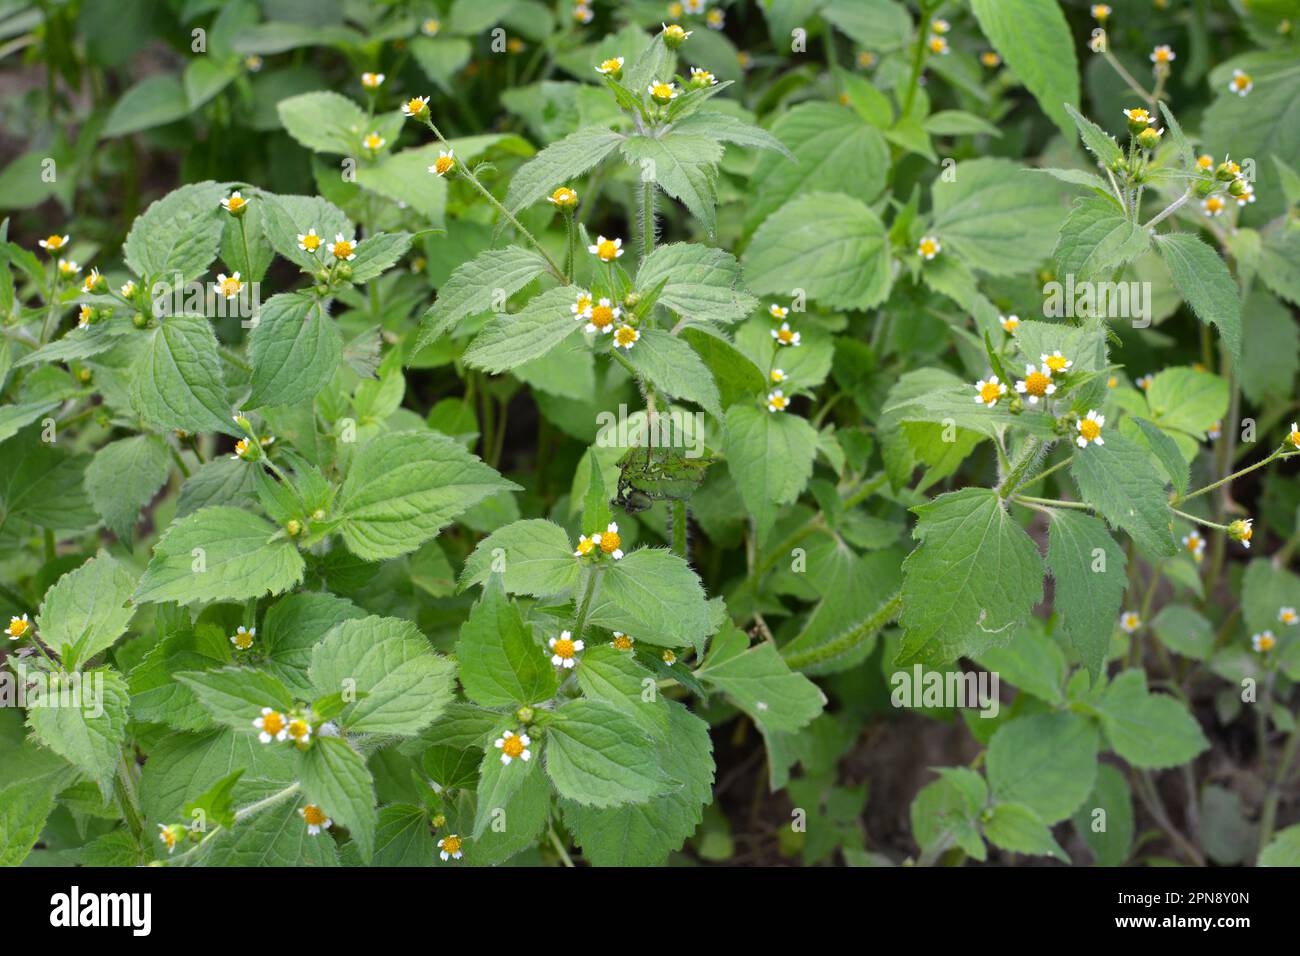 Eine der Unkrautspezies blüht auf dem Feld - Galinsoga parviflora Stockfoto